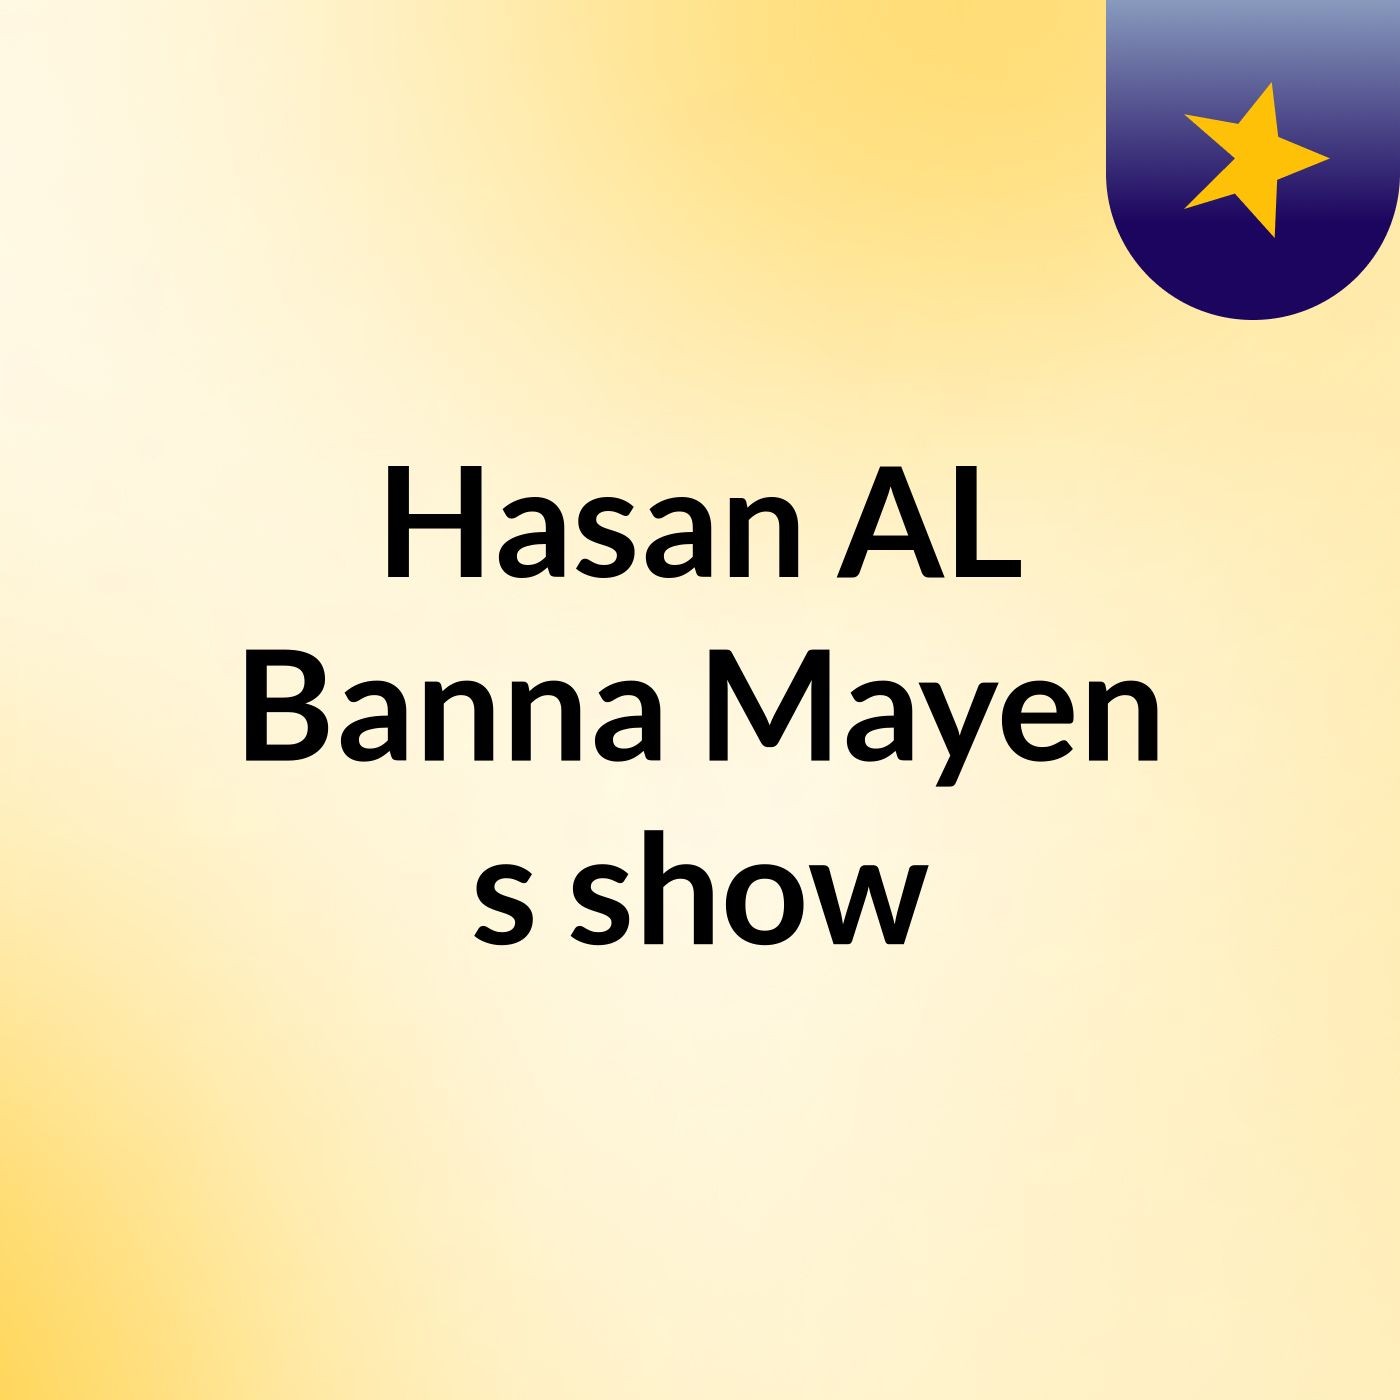 Hasan AL Banna Mayen's show